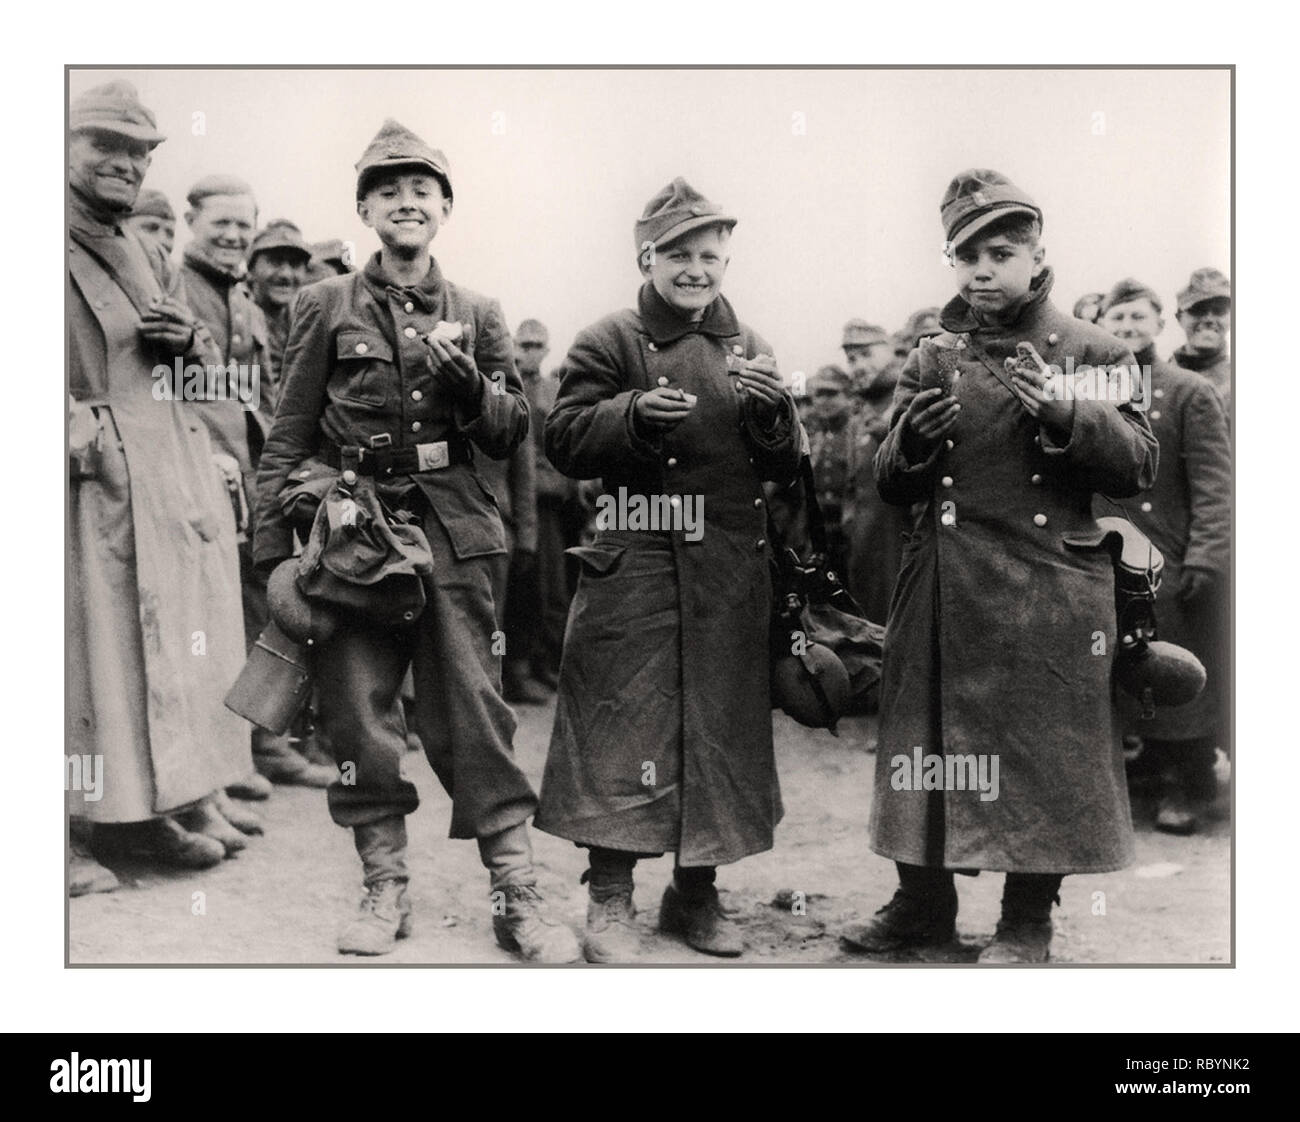 Armée jeunesse hitlérienne, âgé de 14 ans, les adolescents allemands, des soldats de la jeunesse hitlérienne, capturés par des unités de l'armée américaine en avril 1945. Berstadt, Hessen, Allemagne province Date : avril 1945 Banque D'Images